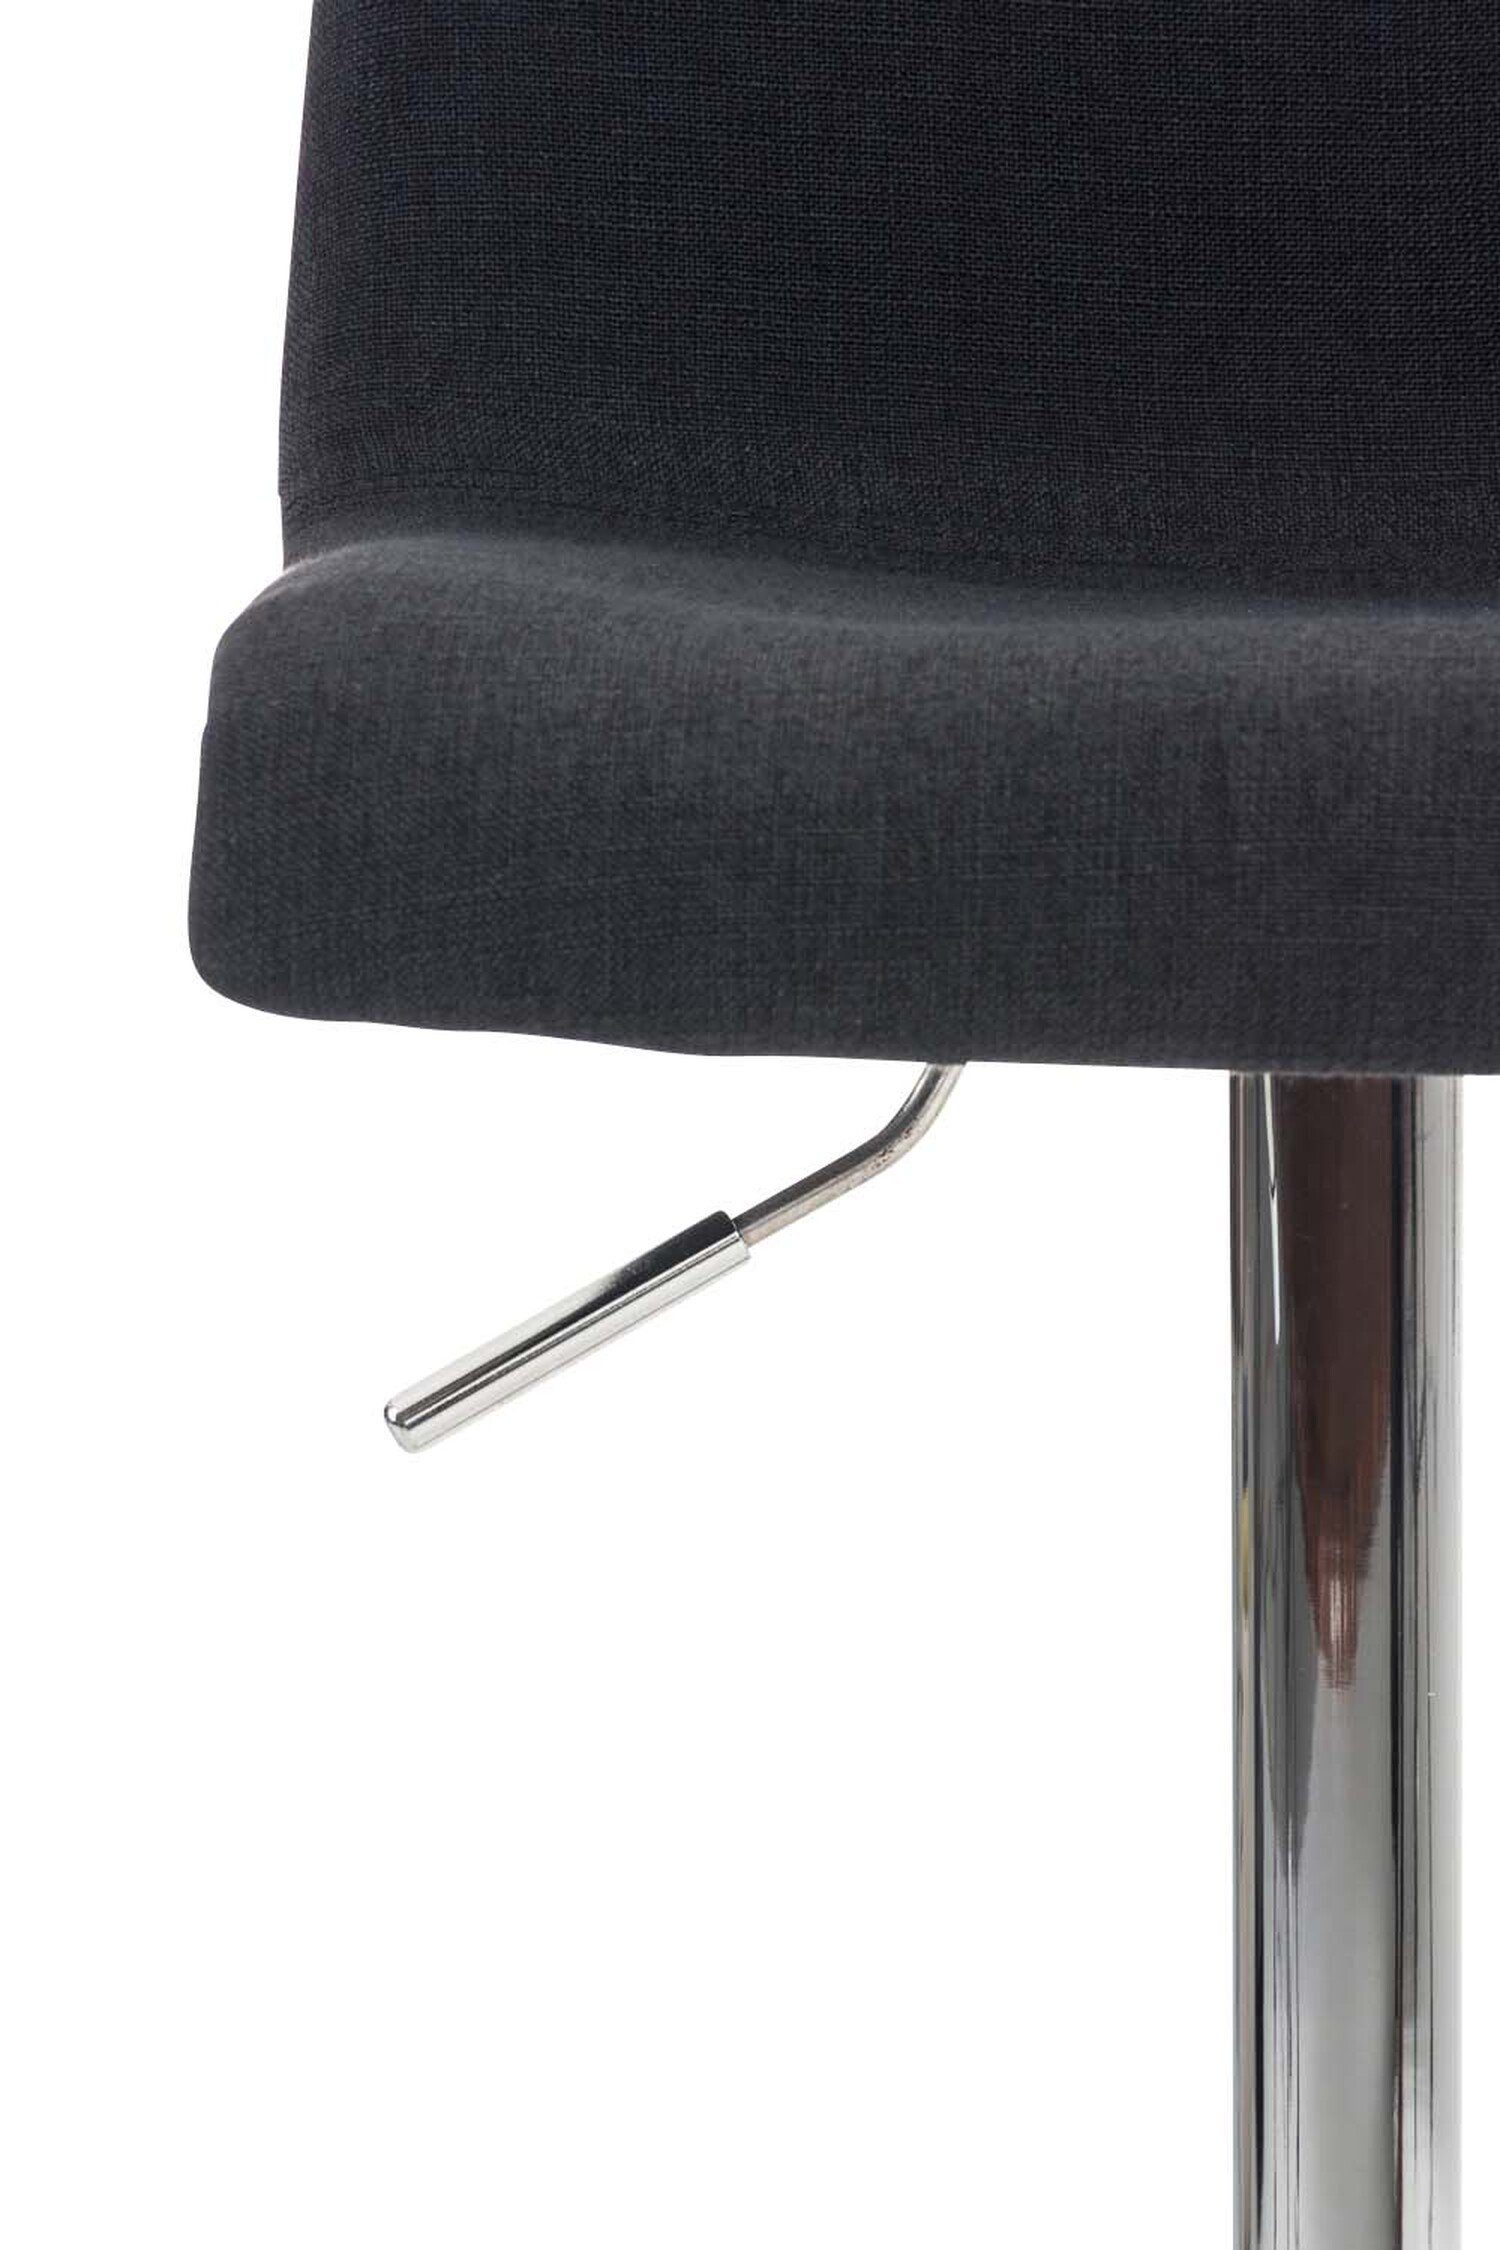 Gestell - (mit - & Hoover Sitzfläche: Barhocker Theke Küche Hocker für - Fußstütze Chrom Schwarz Metall Stoff Tresenhocker), TPFLiving